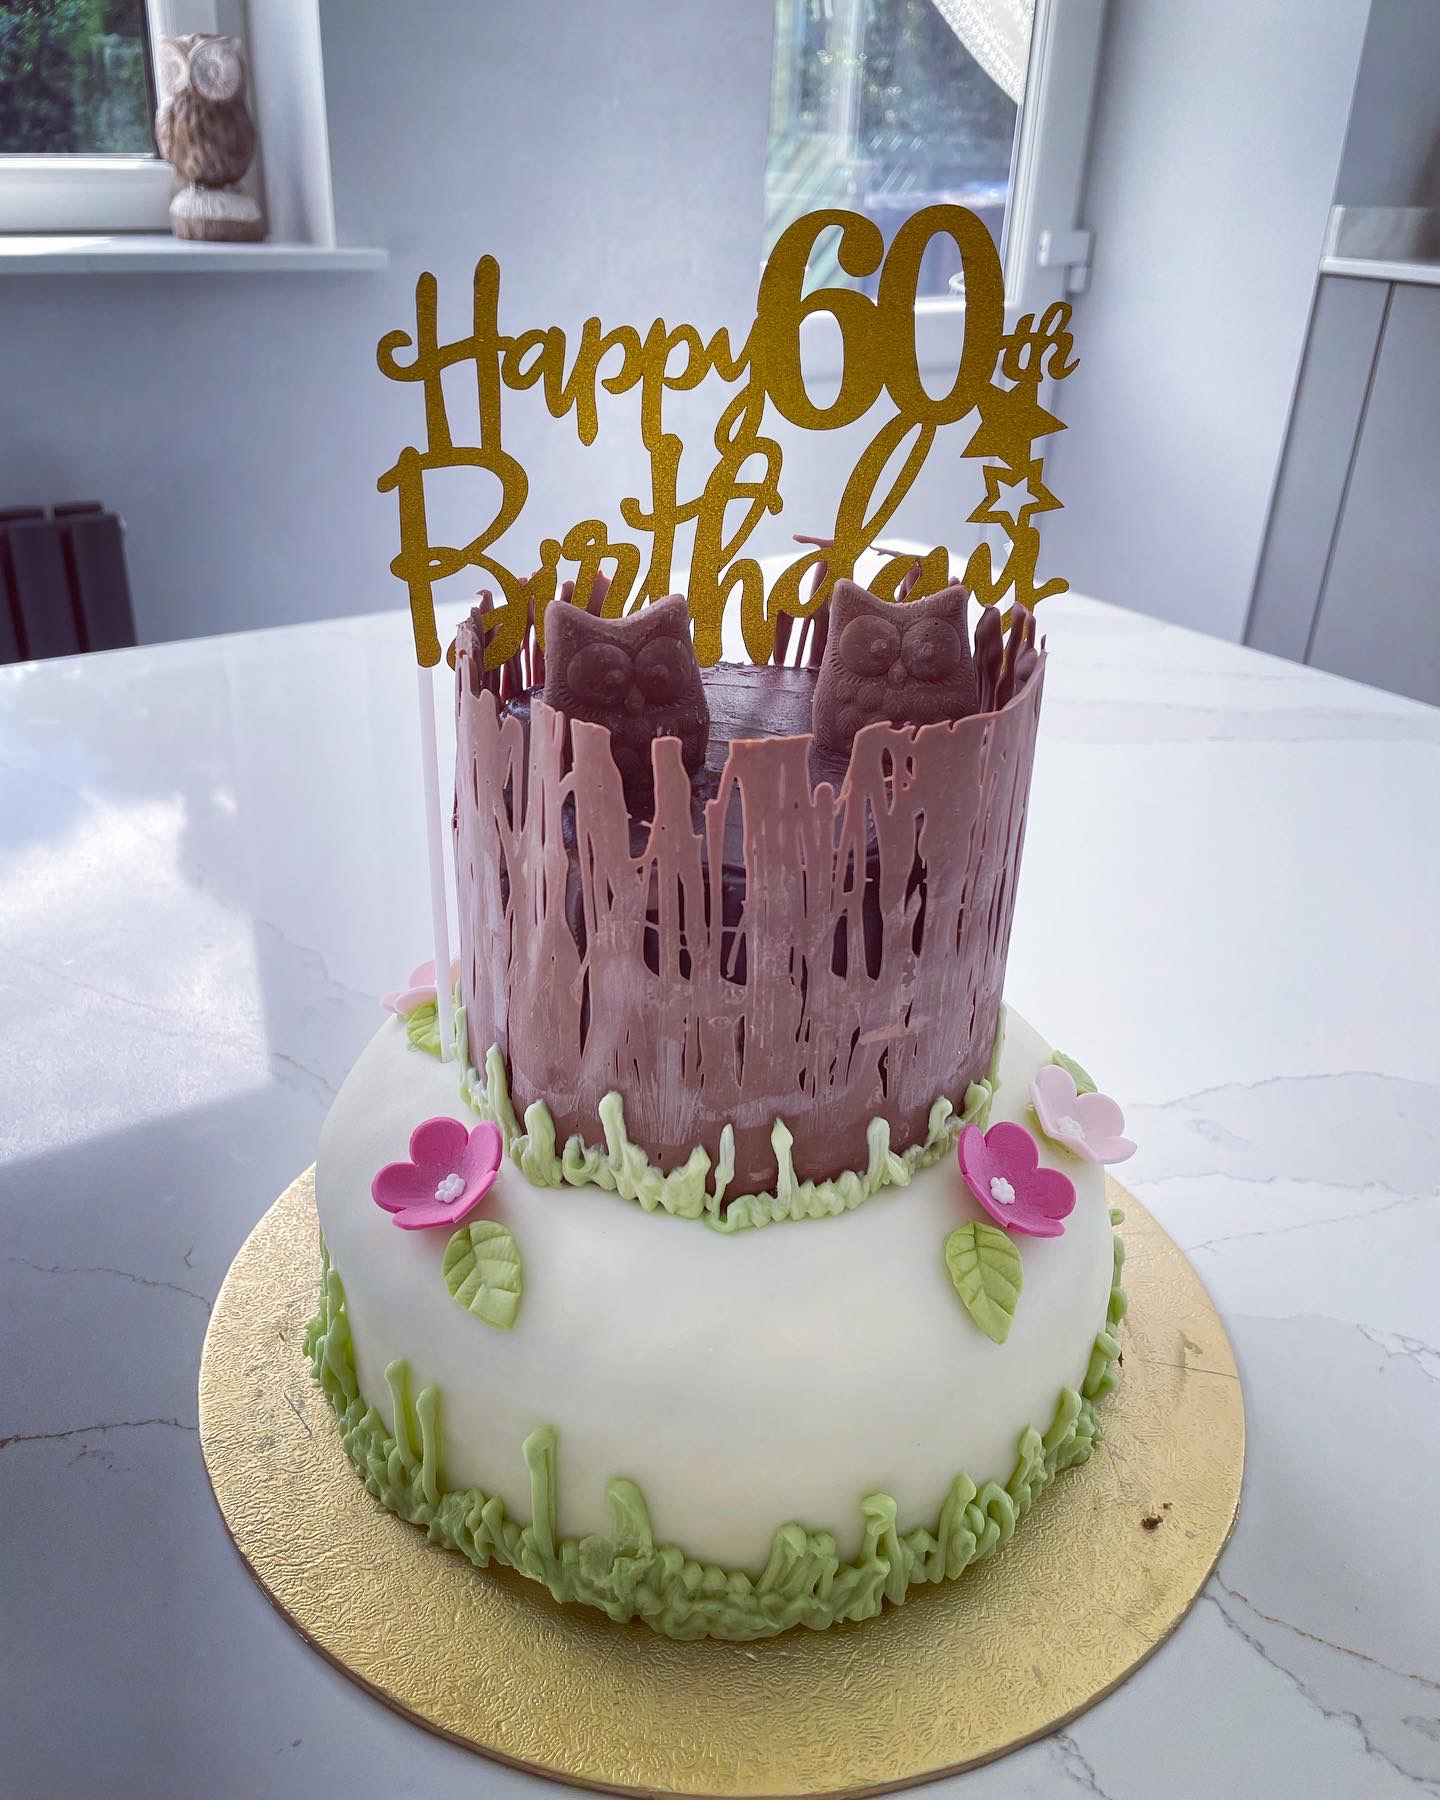 Mum's 60th birthday cake - The Great British Bake Off